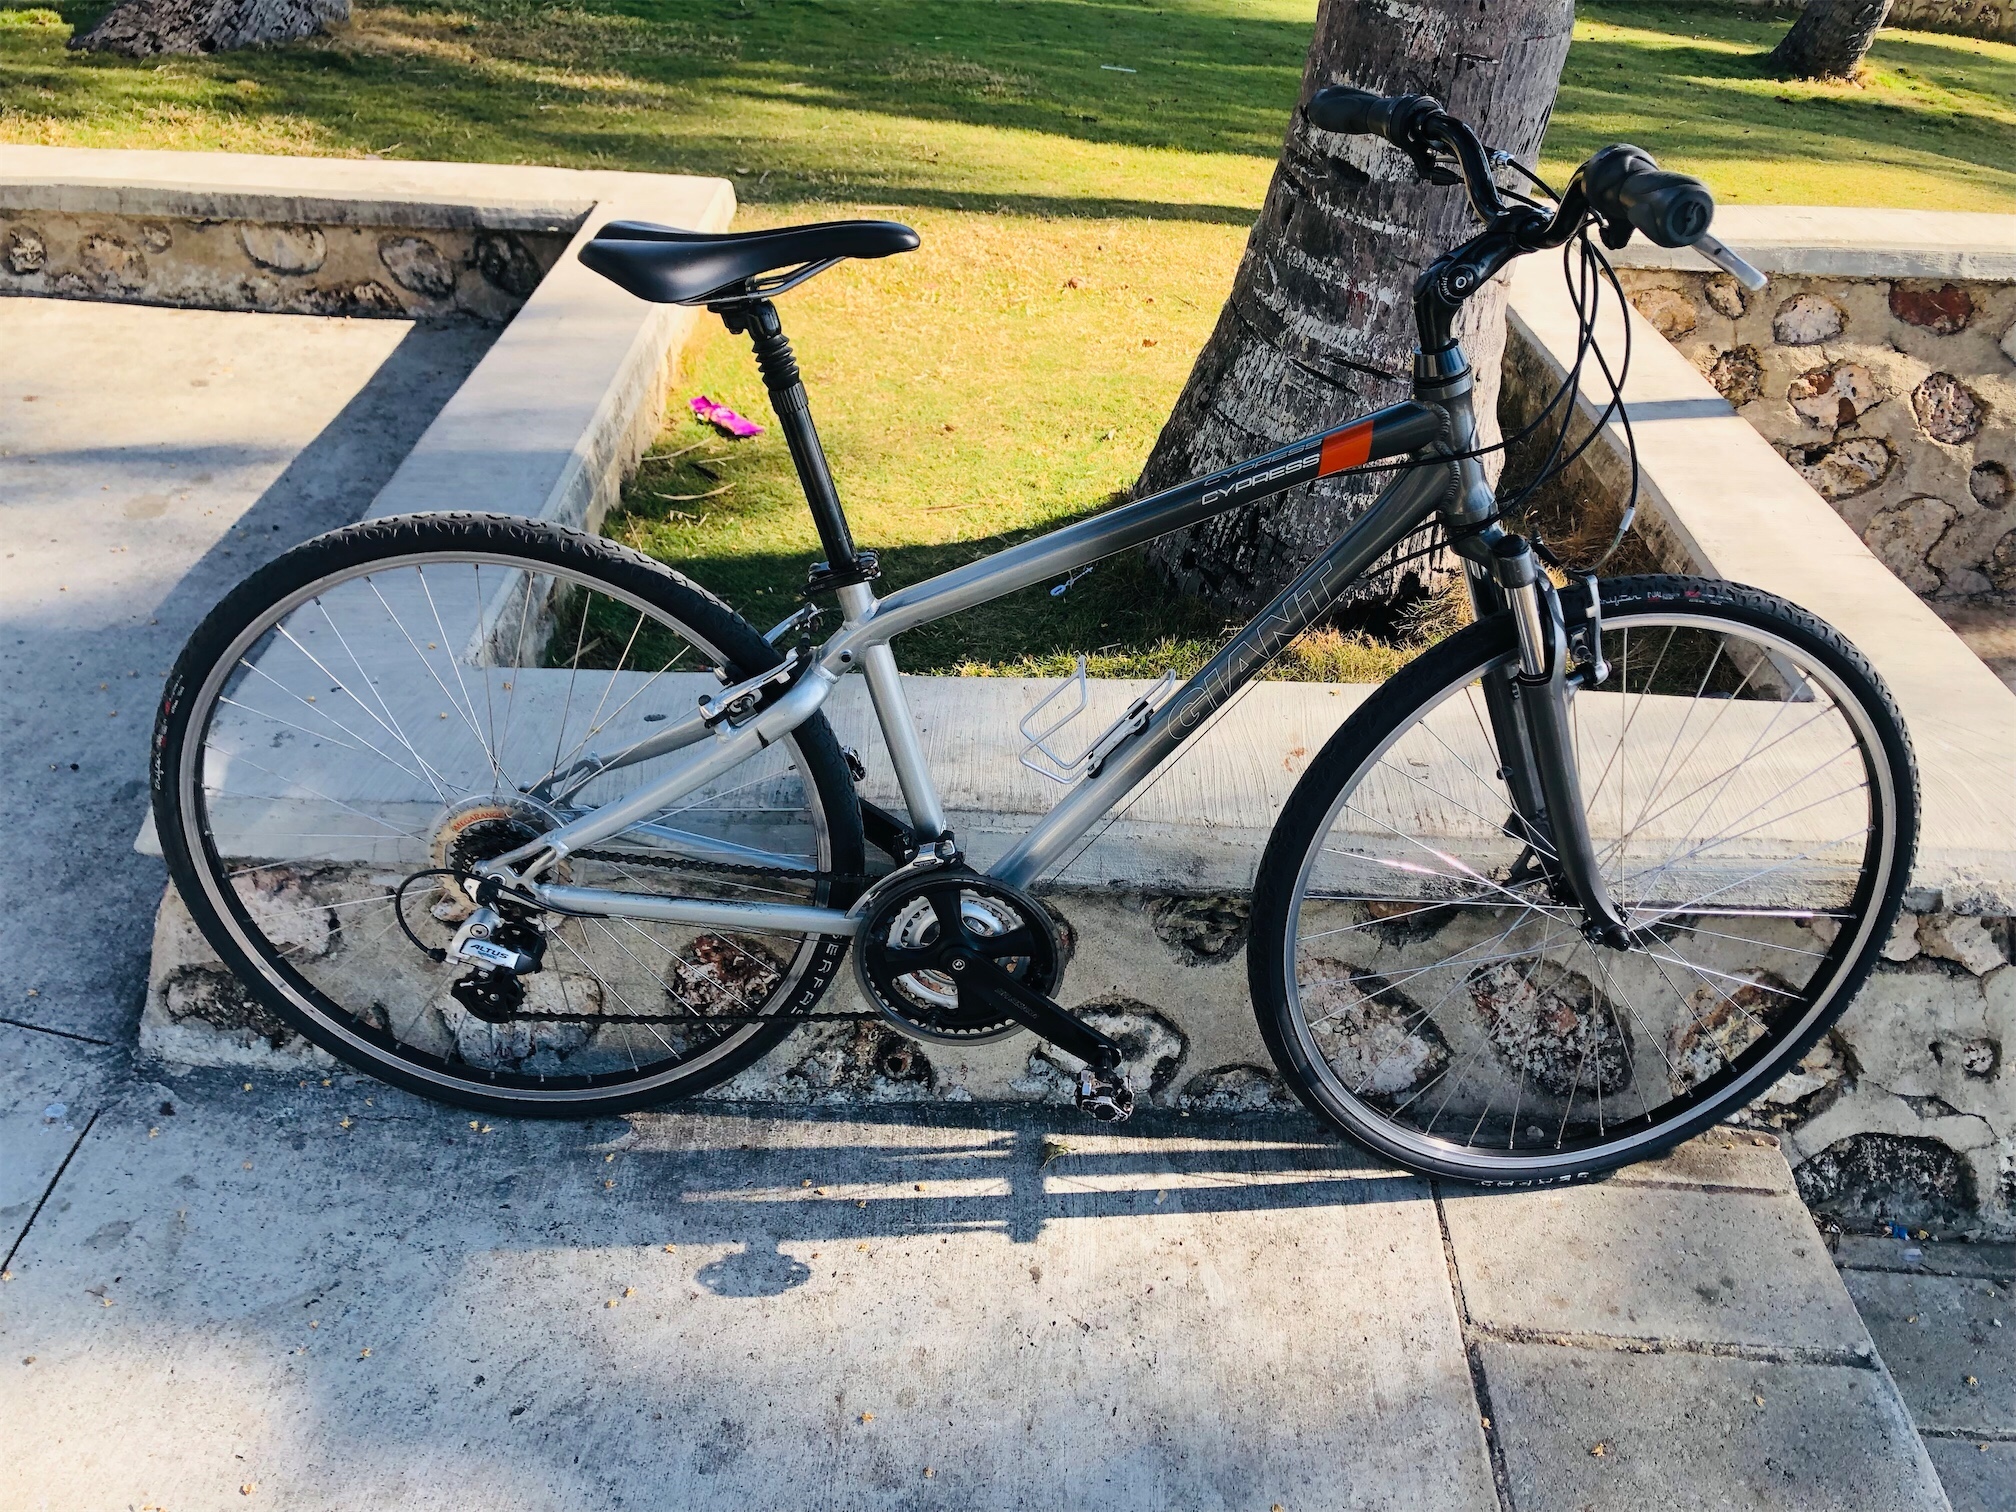 bicicletas y accesorios - ✅Bicicleta Giant Ruta 
✅Cuadro L
✅Size 16
✅Gomas 700/32  27.5
✅Gomas con 95%